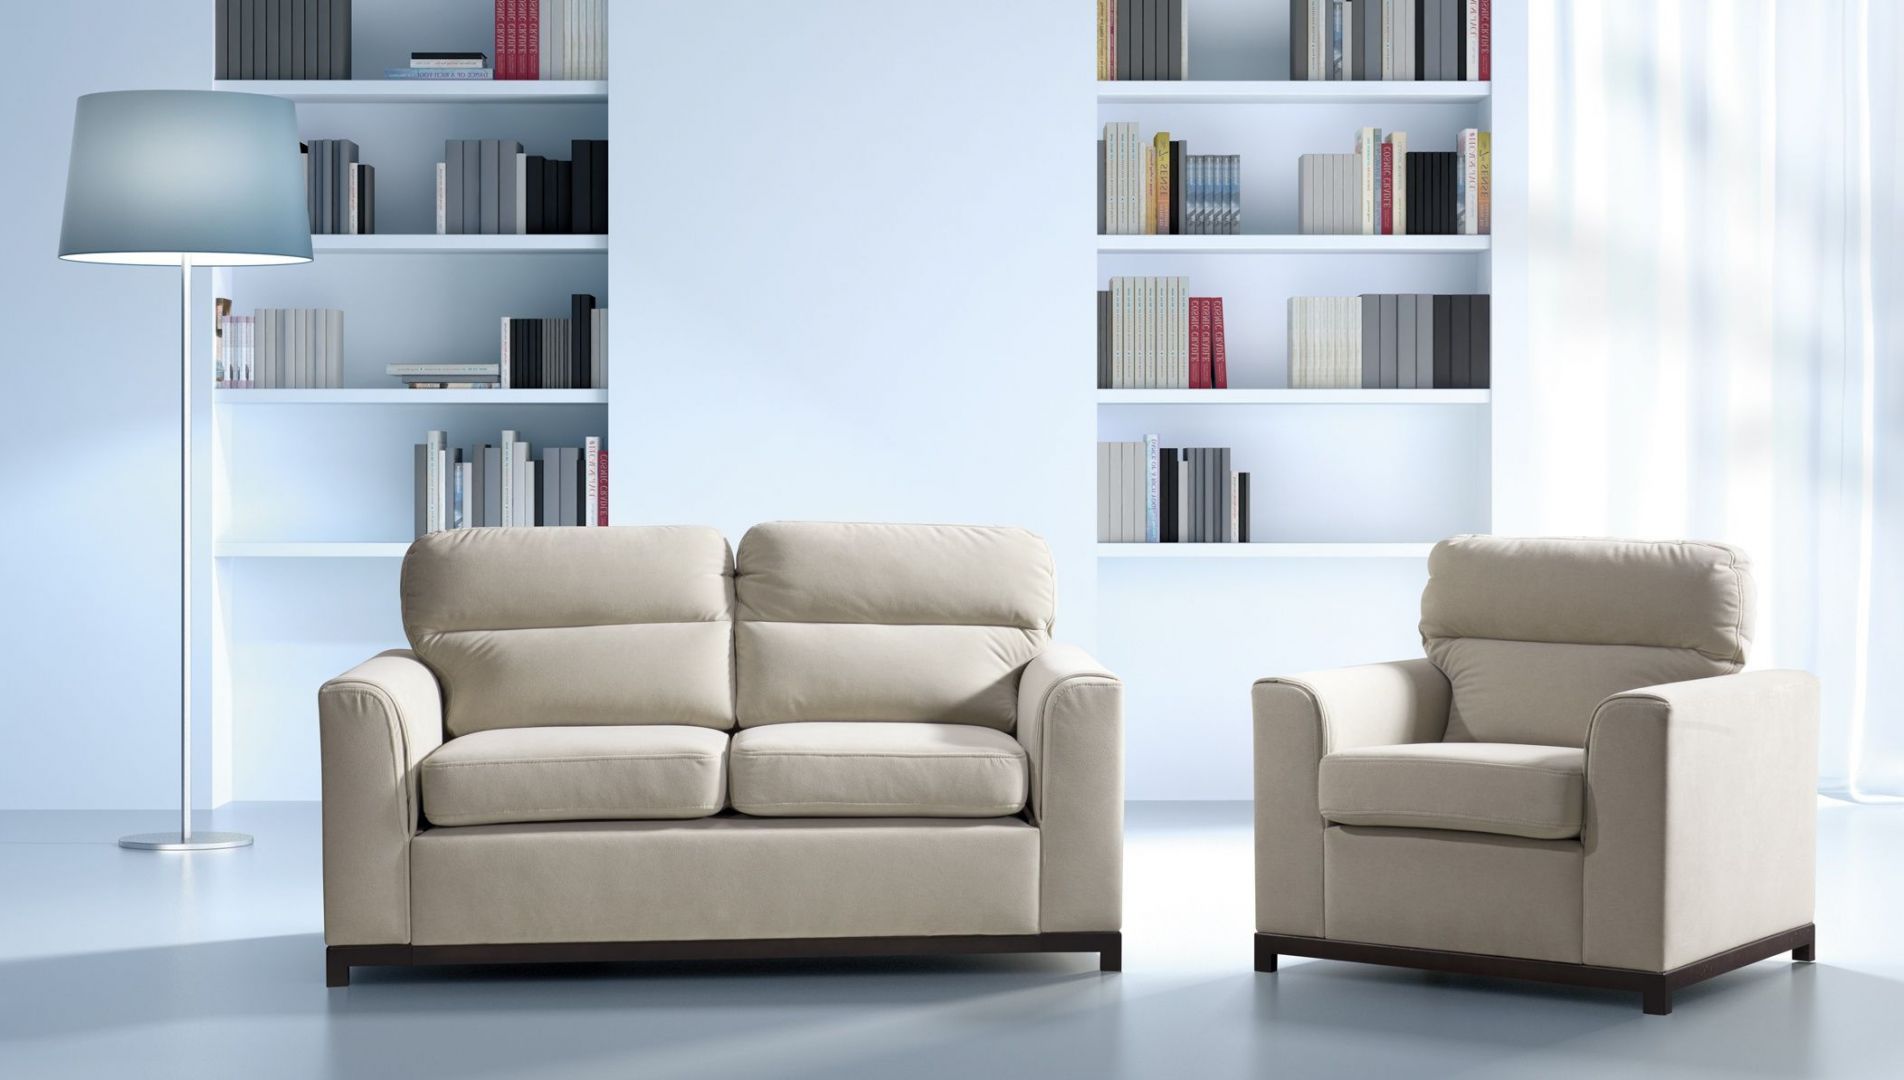 Dwuosobowa sofa Cetros oprócz klasycznej formy posiada także funkcję spania. Rozkłada się poprzez wysunięcie dolnego siedziska do przodu. Dodatkowo do kompletu można dokupić fotel. Fot. Libro